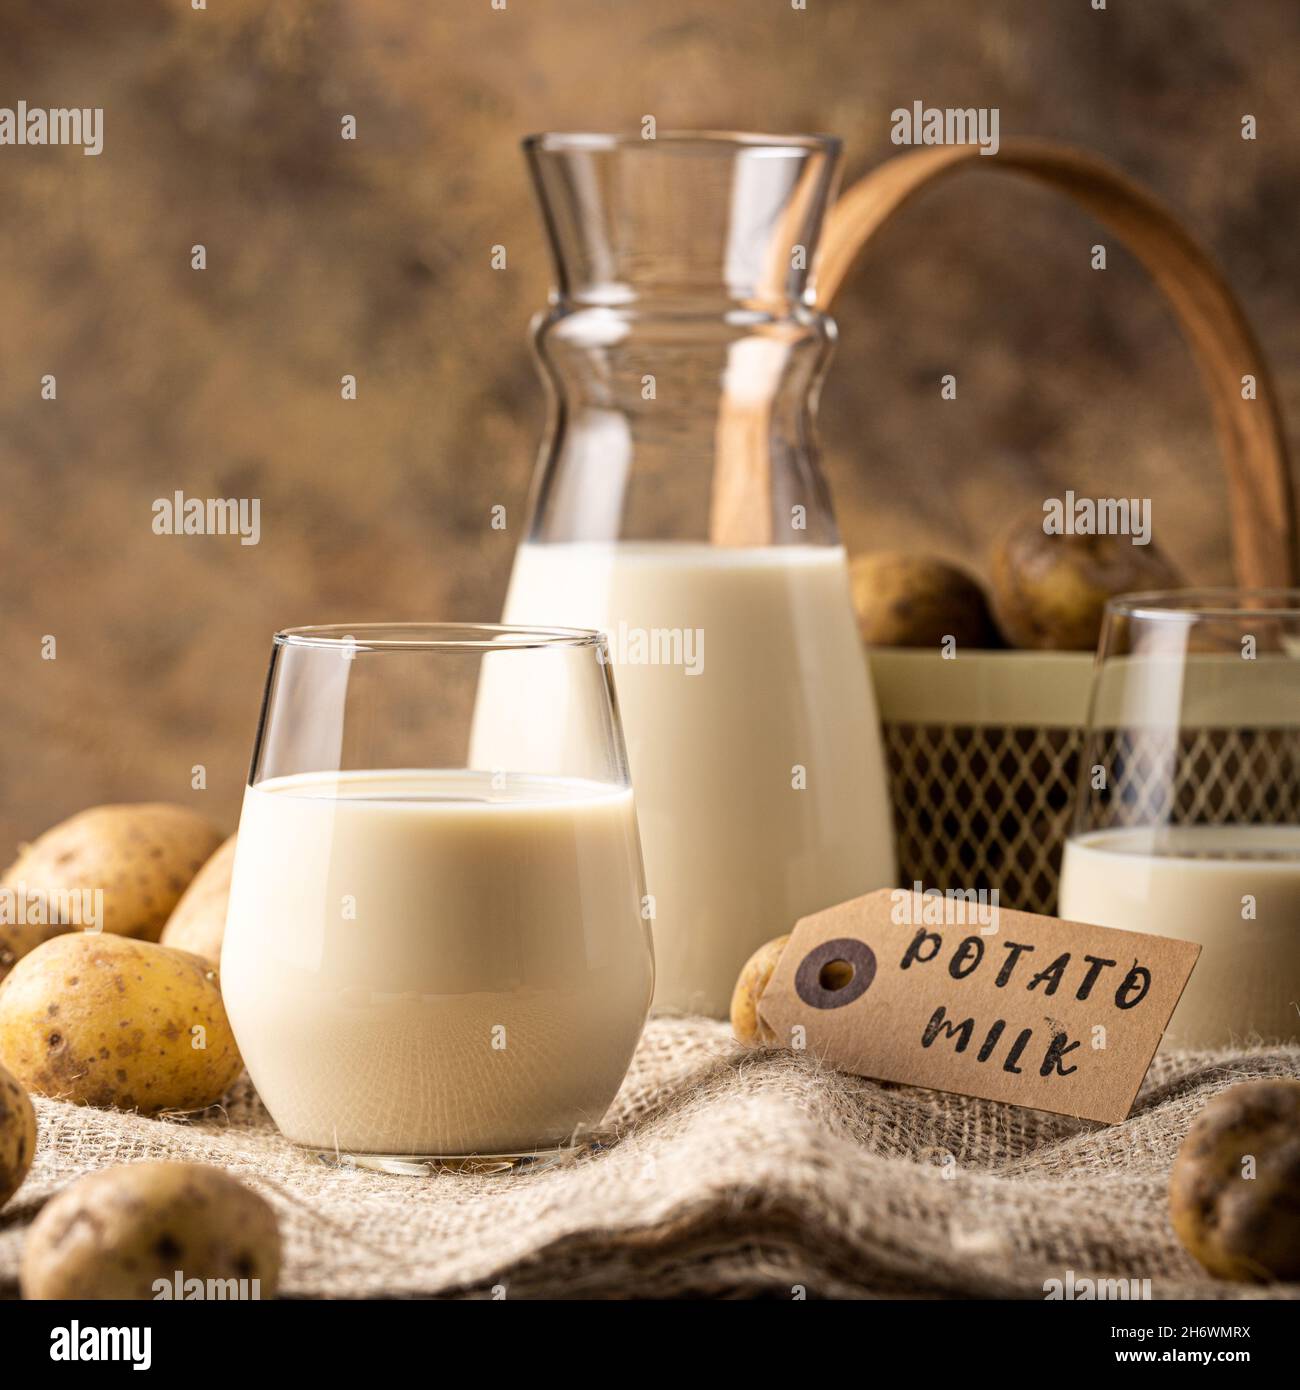 Potato milk alternative drink in glass Stock Photo